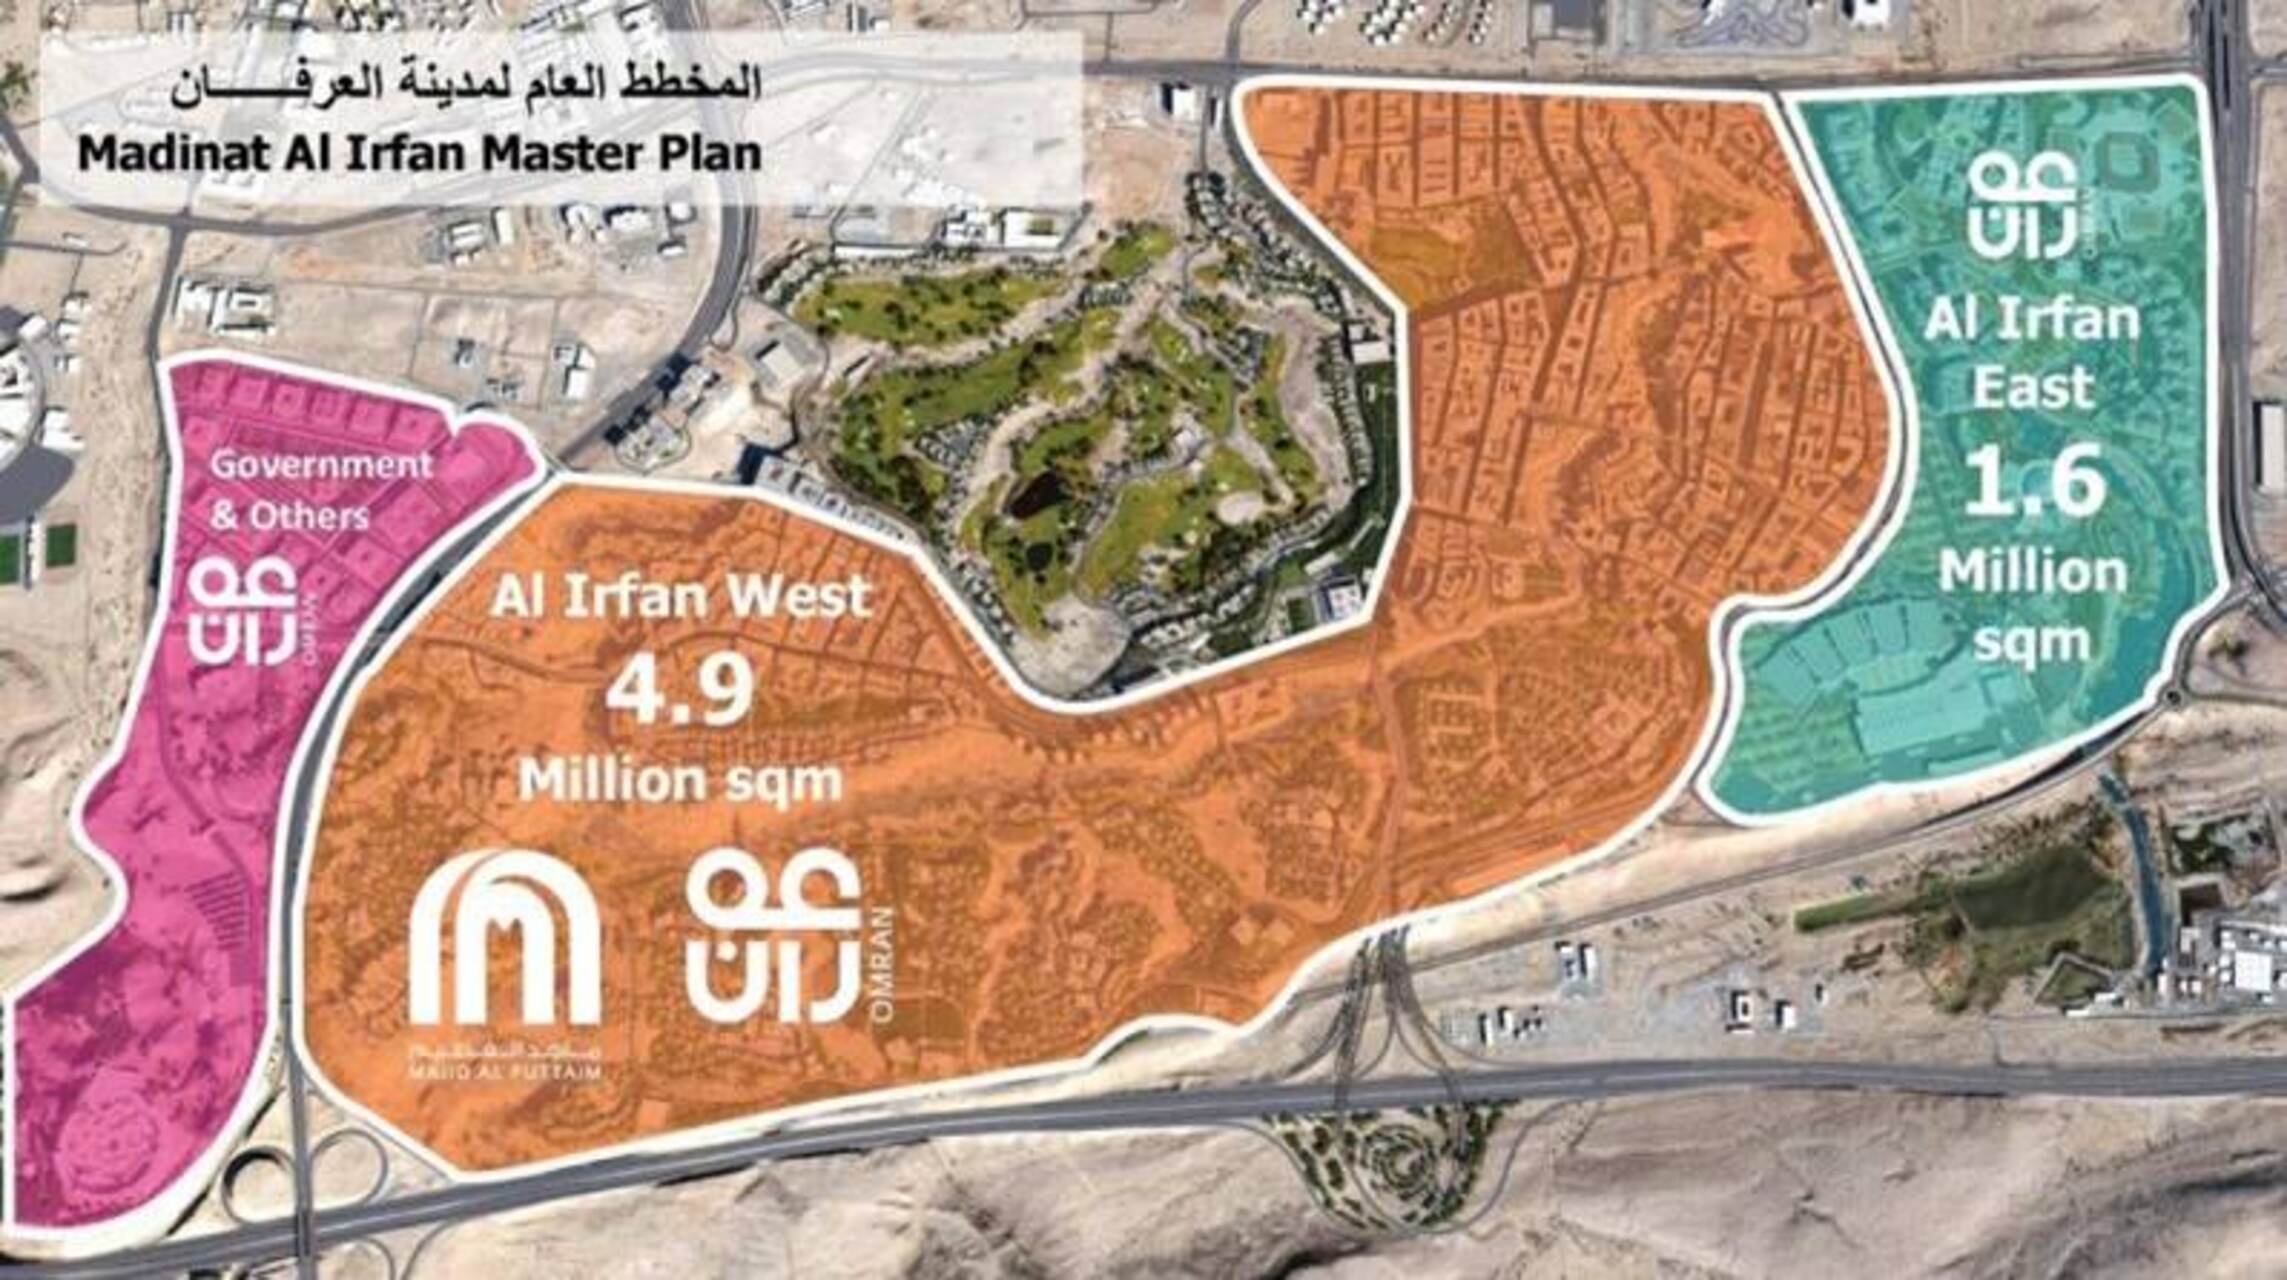 مدینه العرفان: بزرگترین پروژه توسعه شهری با کاربری ترکیبی و پایدار که توسط گروه OMRAN در عمان طراحی، ایجاد و مدیریت می شود.